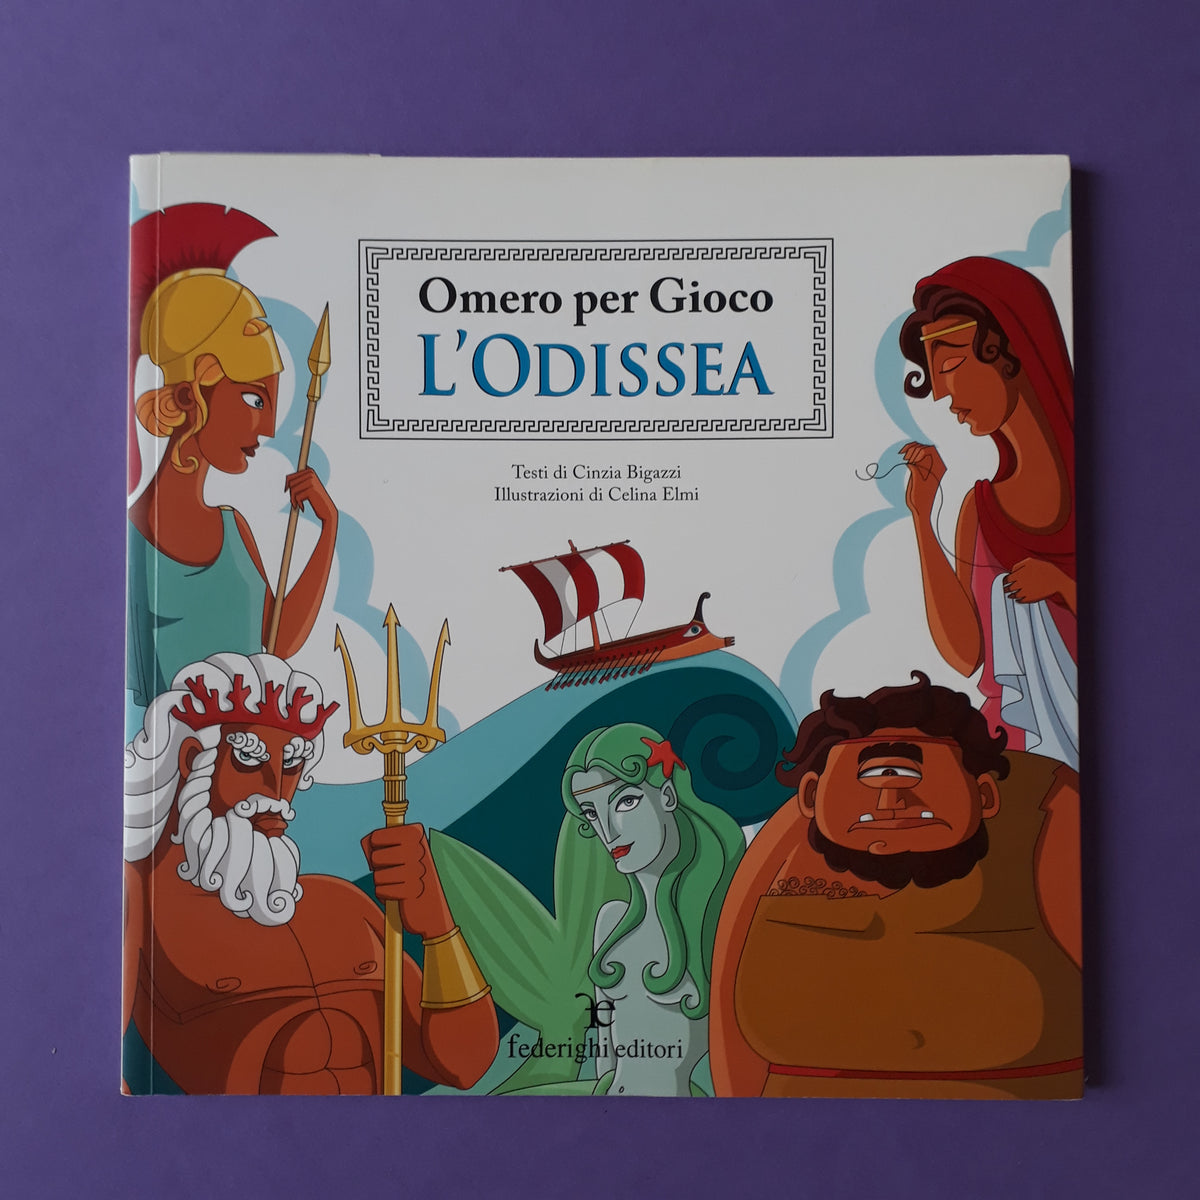 9788885862944 Omero 2020 - Omero. Odissea tradotta in lingua siciliana 